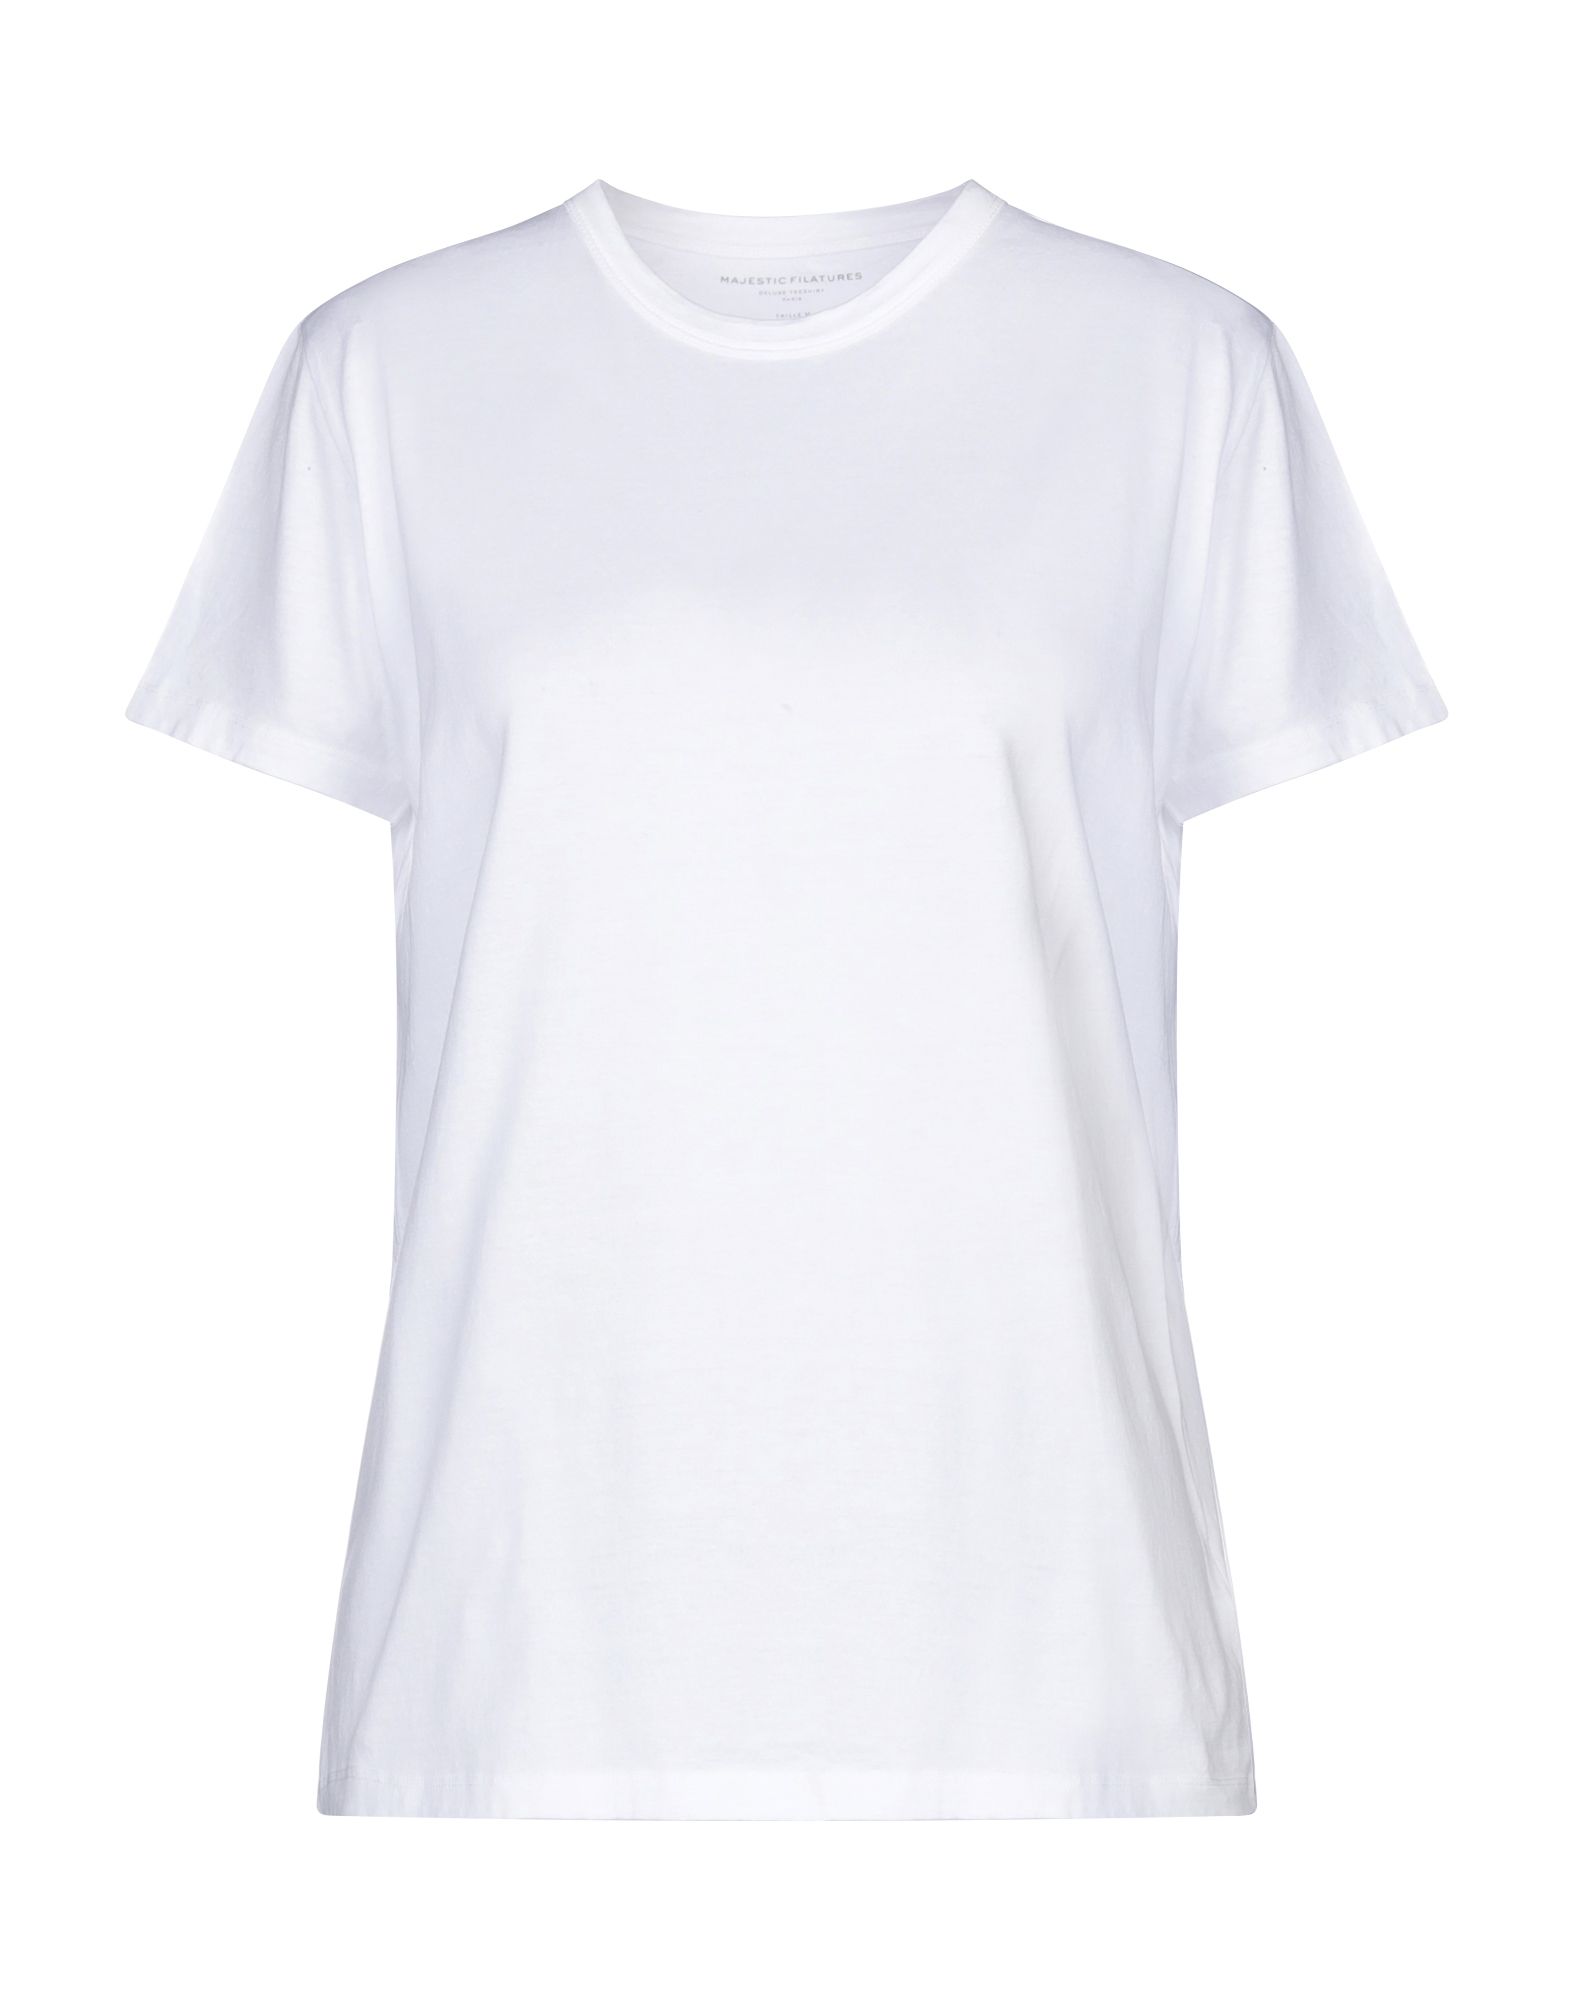 MAJESTIC FILATURES T-shirts Herren Weiß von MAJESTIC FILATURES